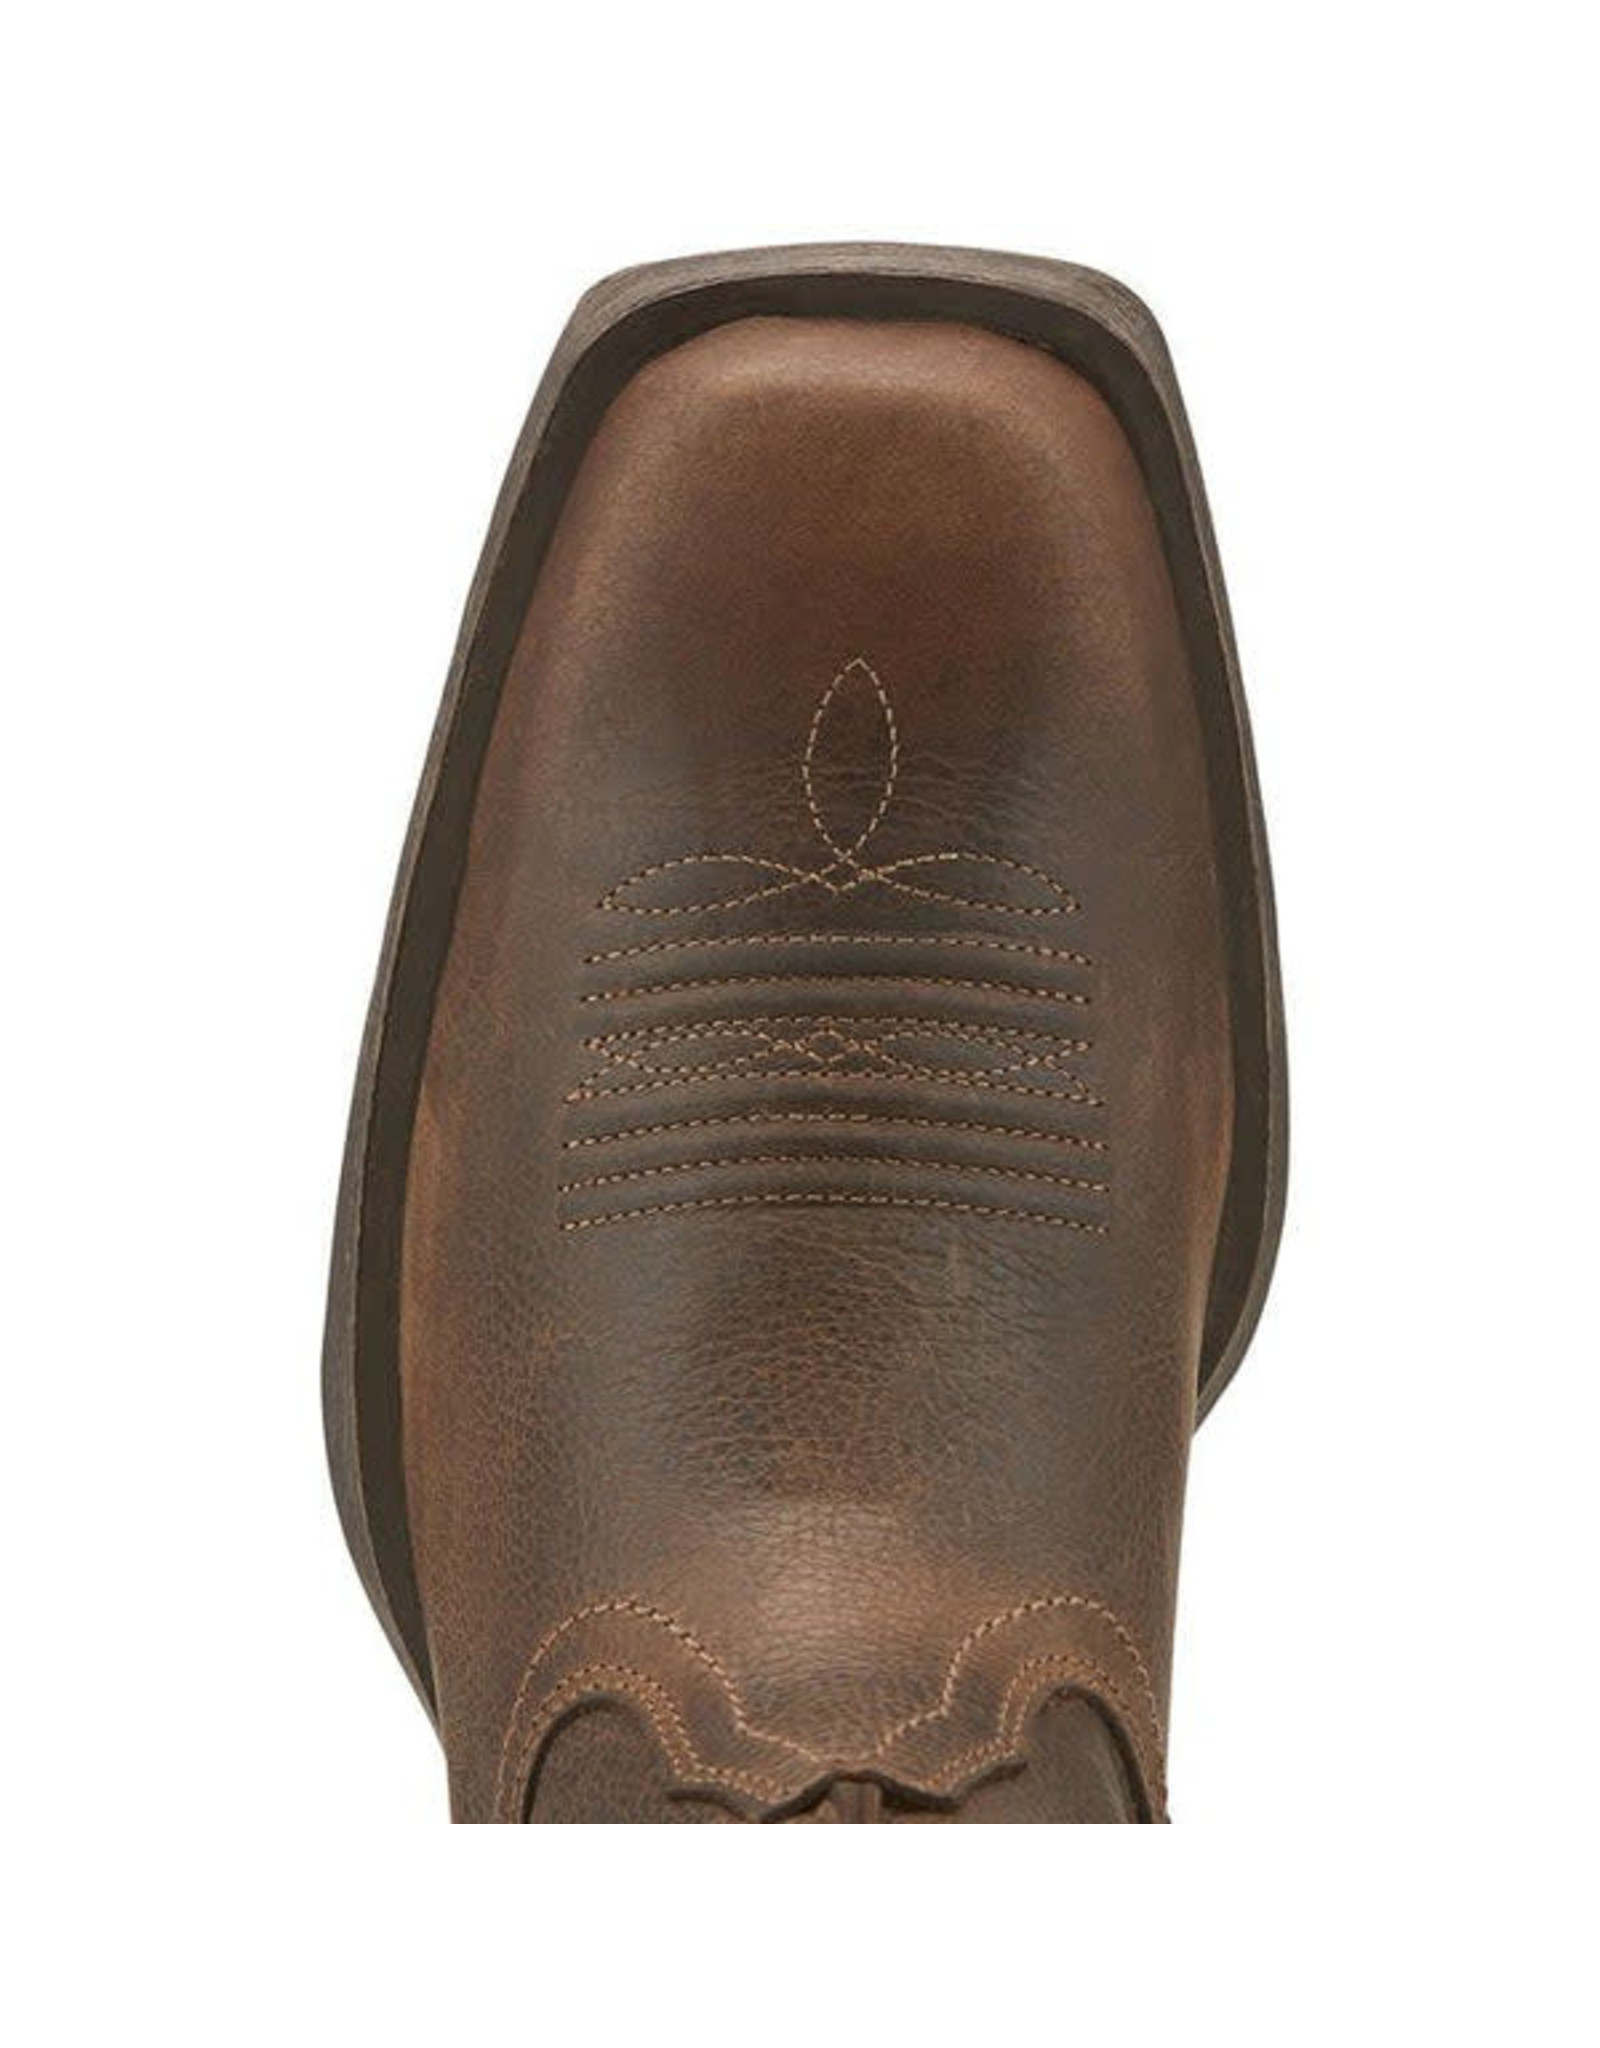 Ariat Men's Wicker Rambler 10015307 Western Boots